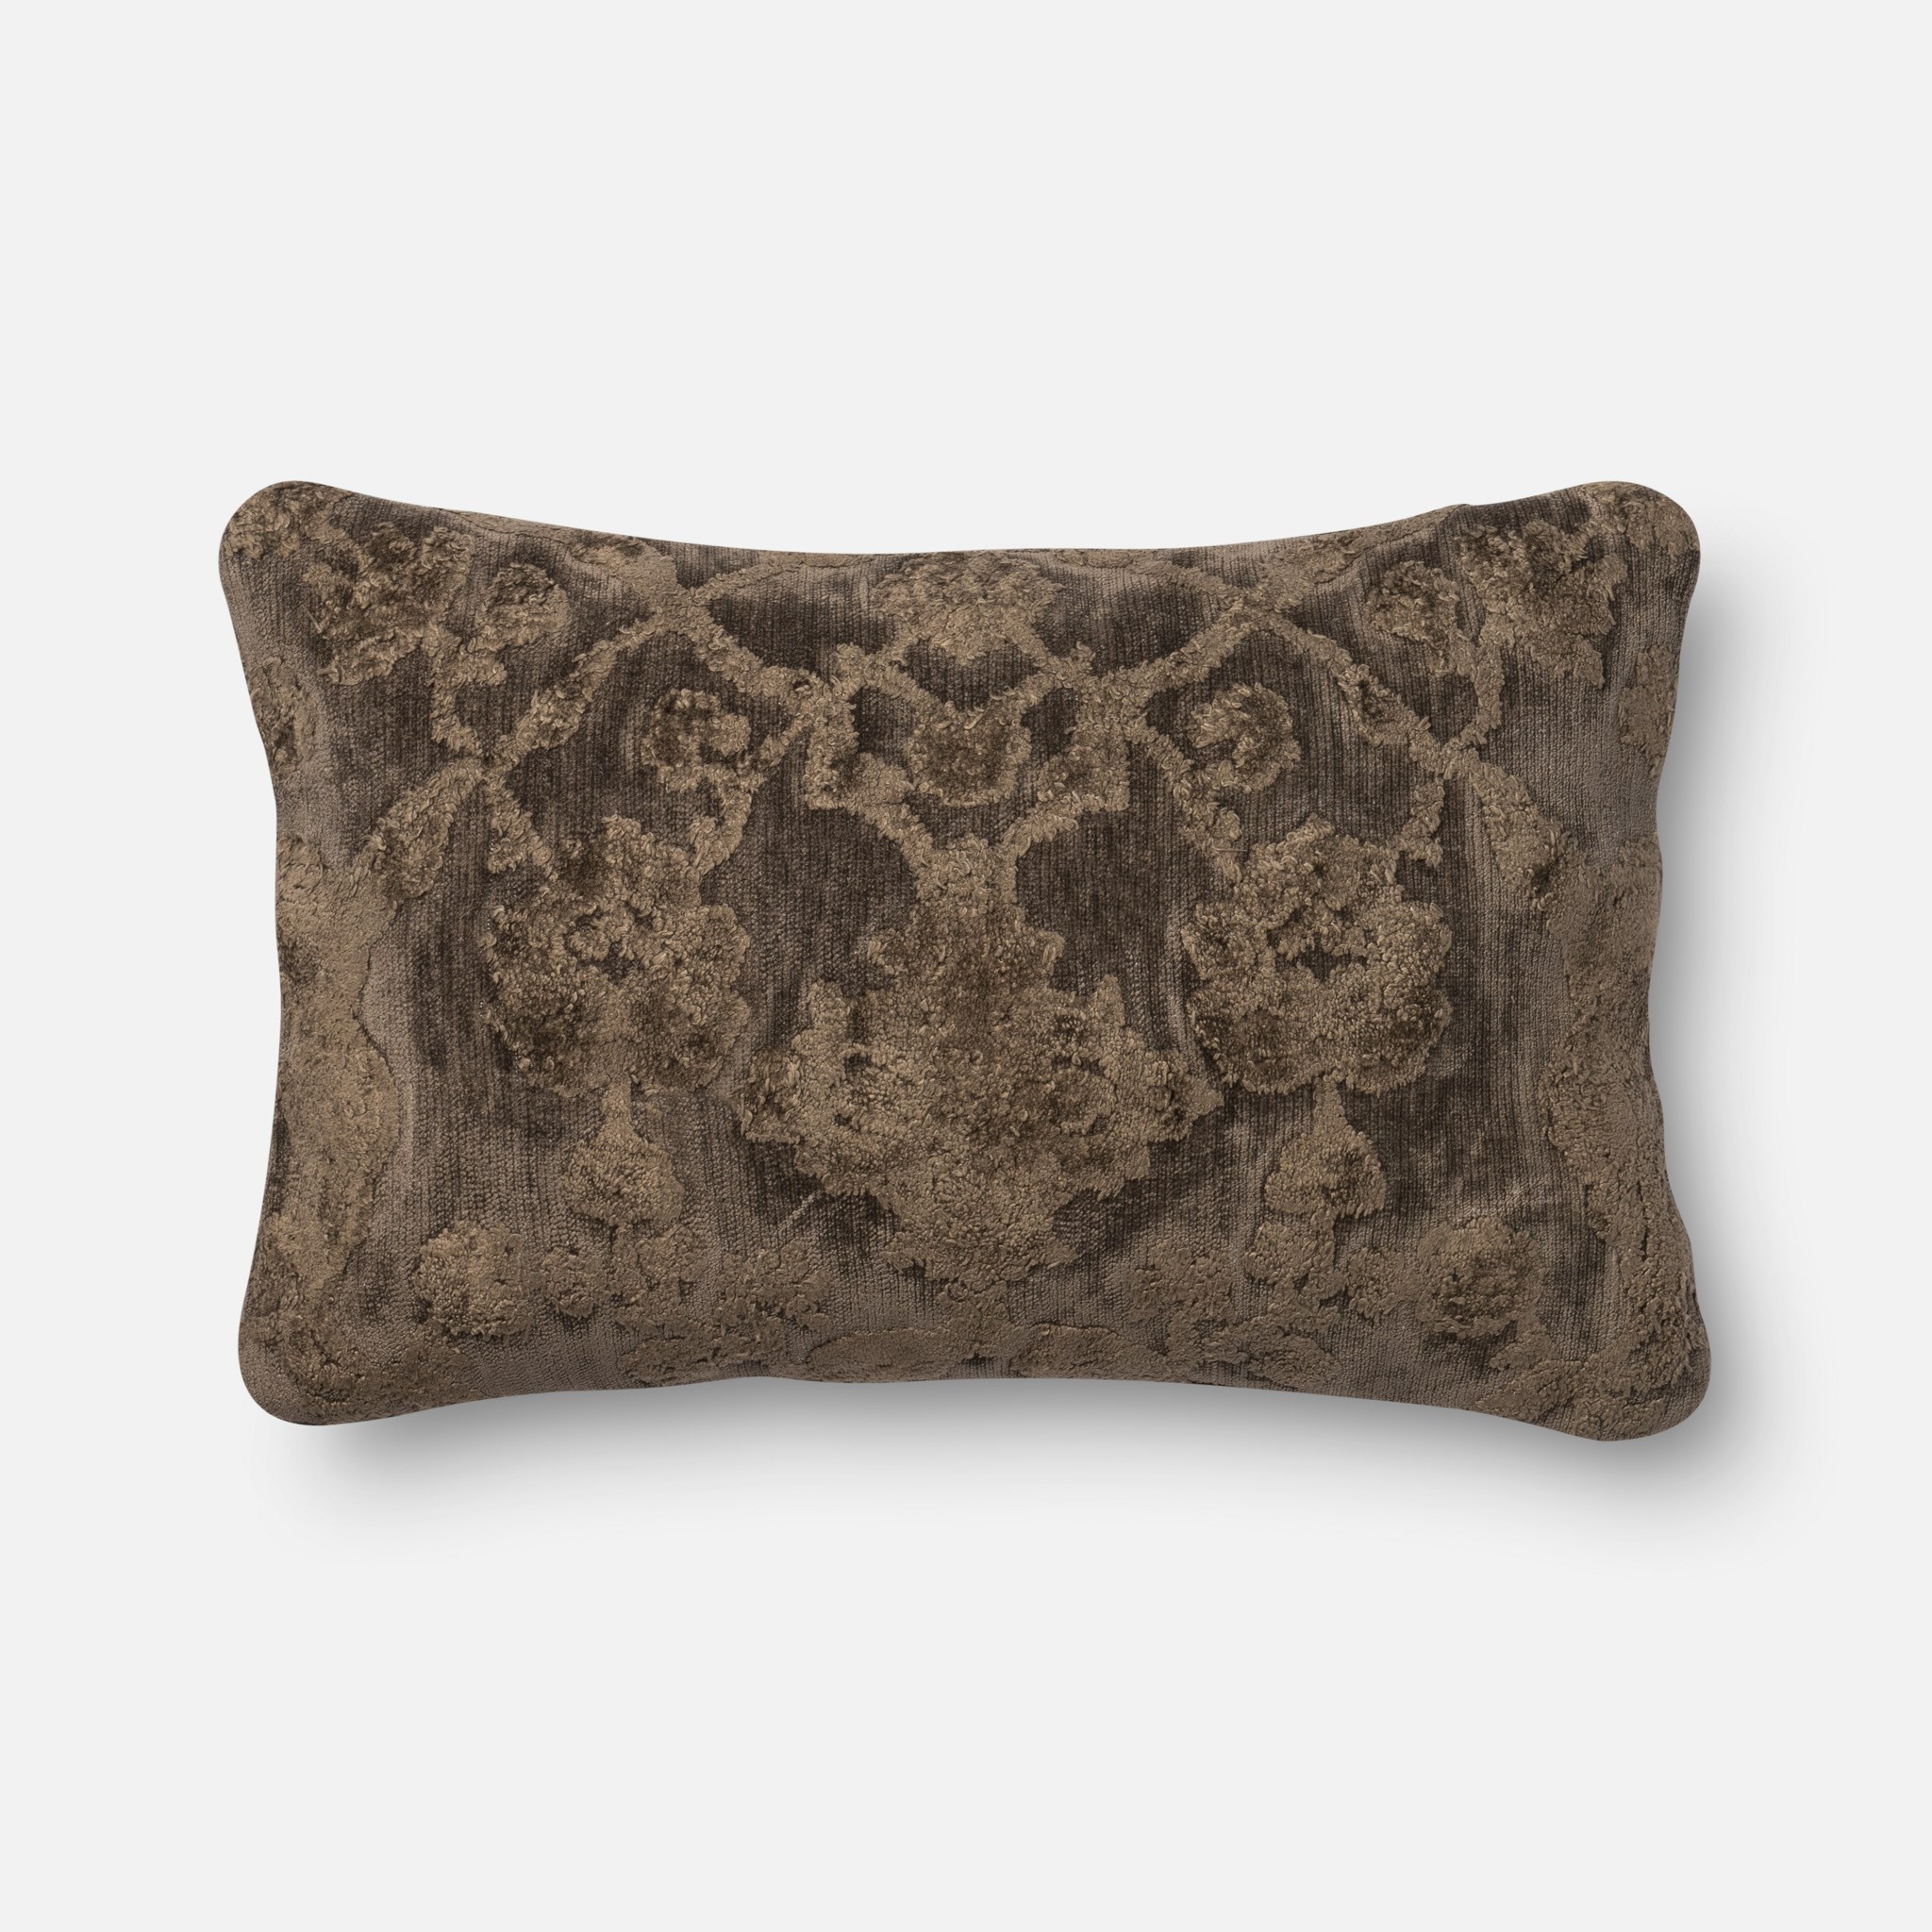 Venetian Lumbar Throw Pillow, Brown, 22" x 14" - Image 0